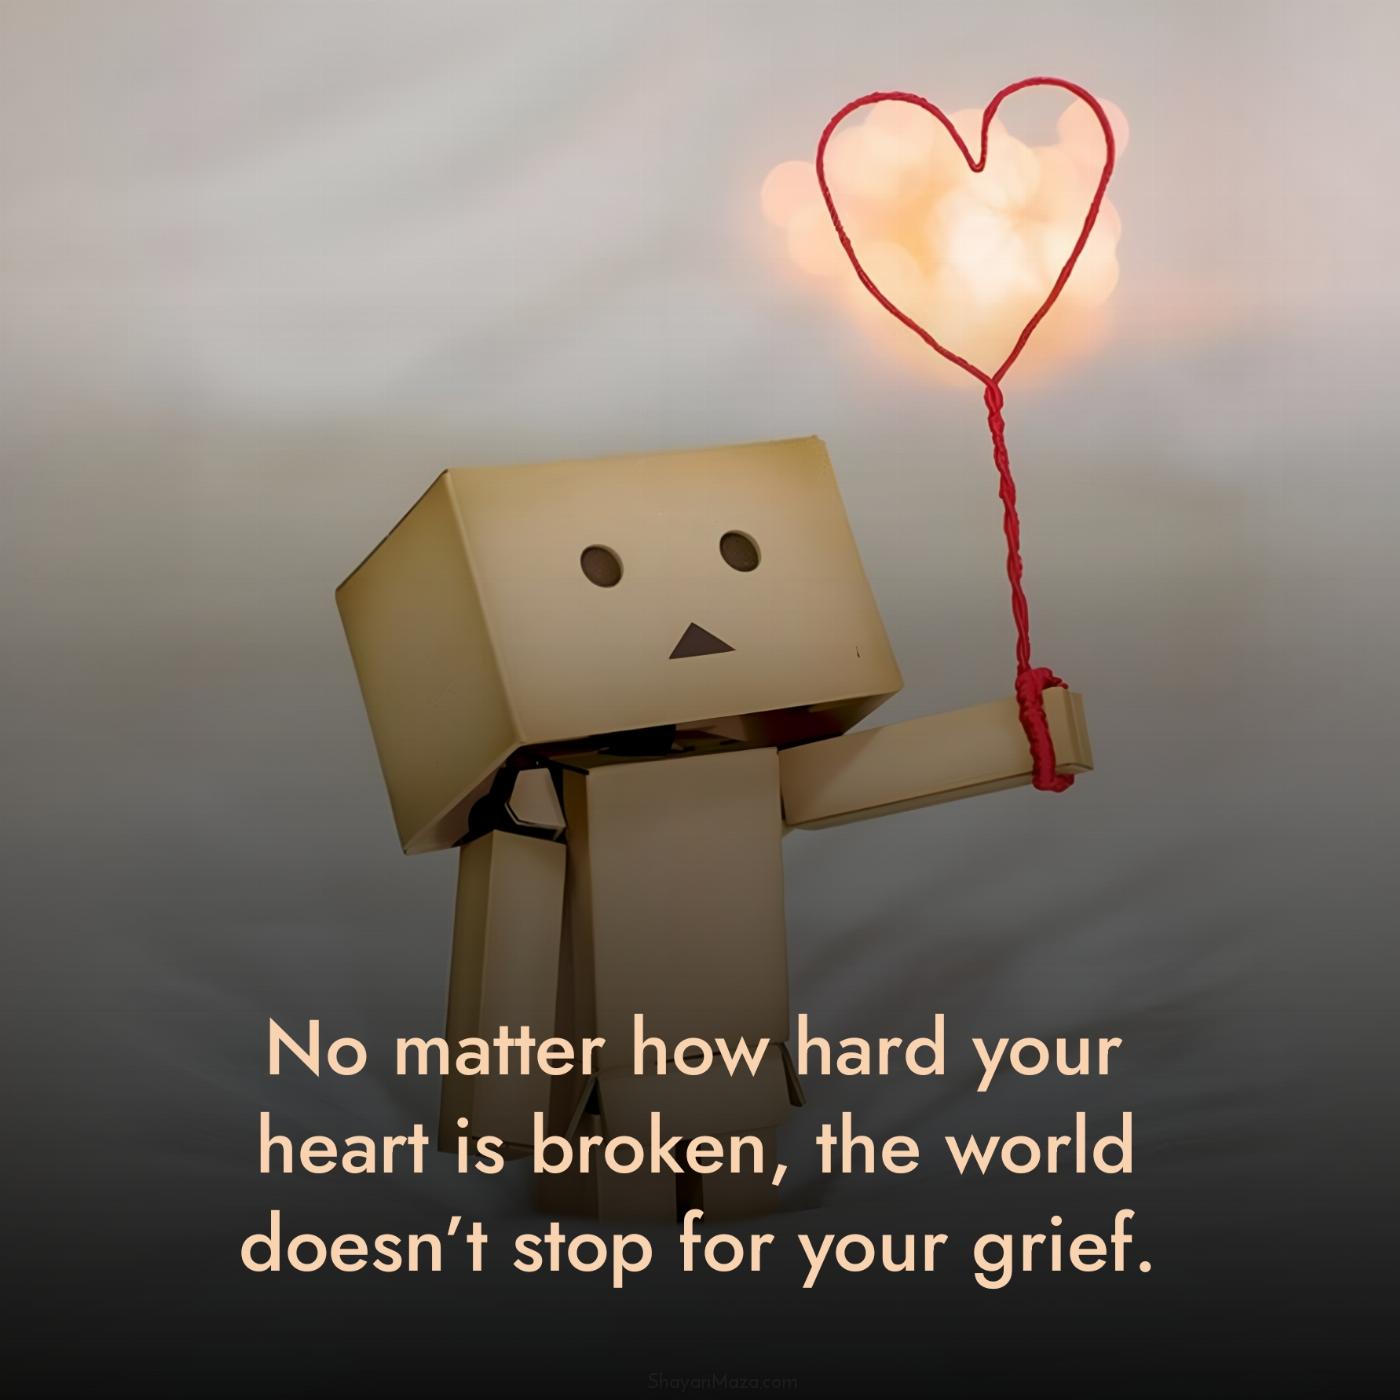 No matter how hard your heart is broken